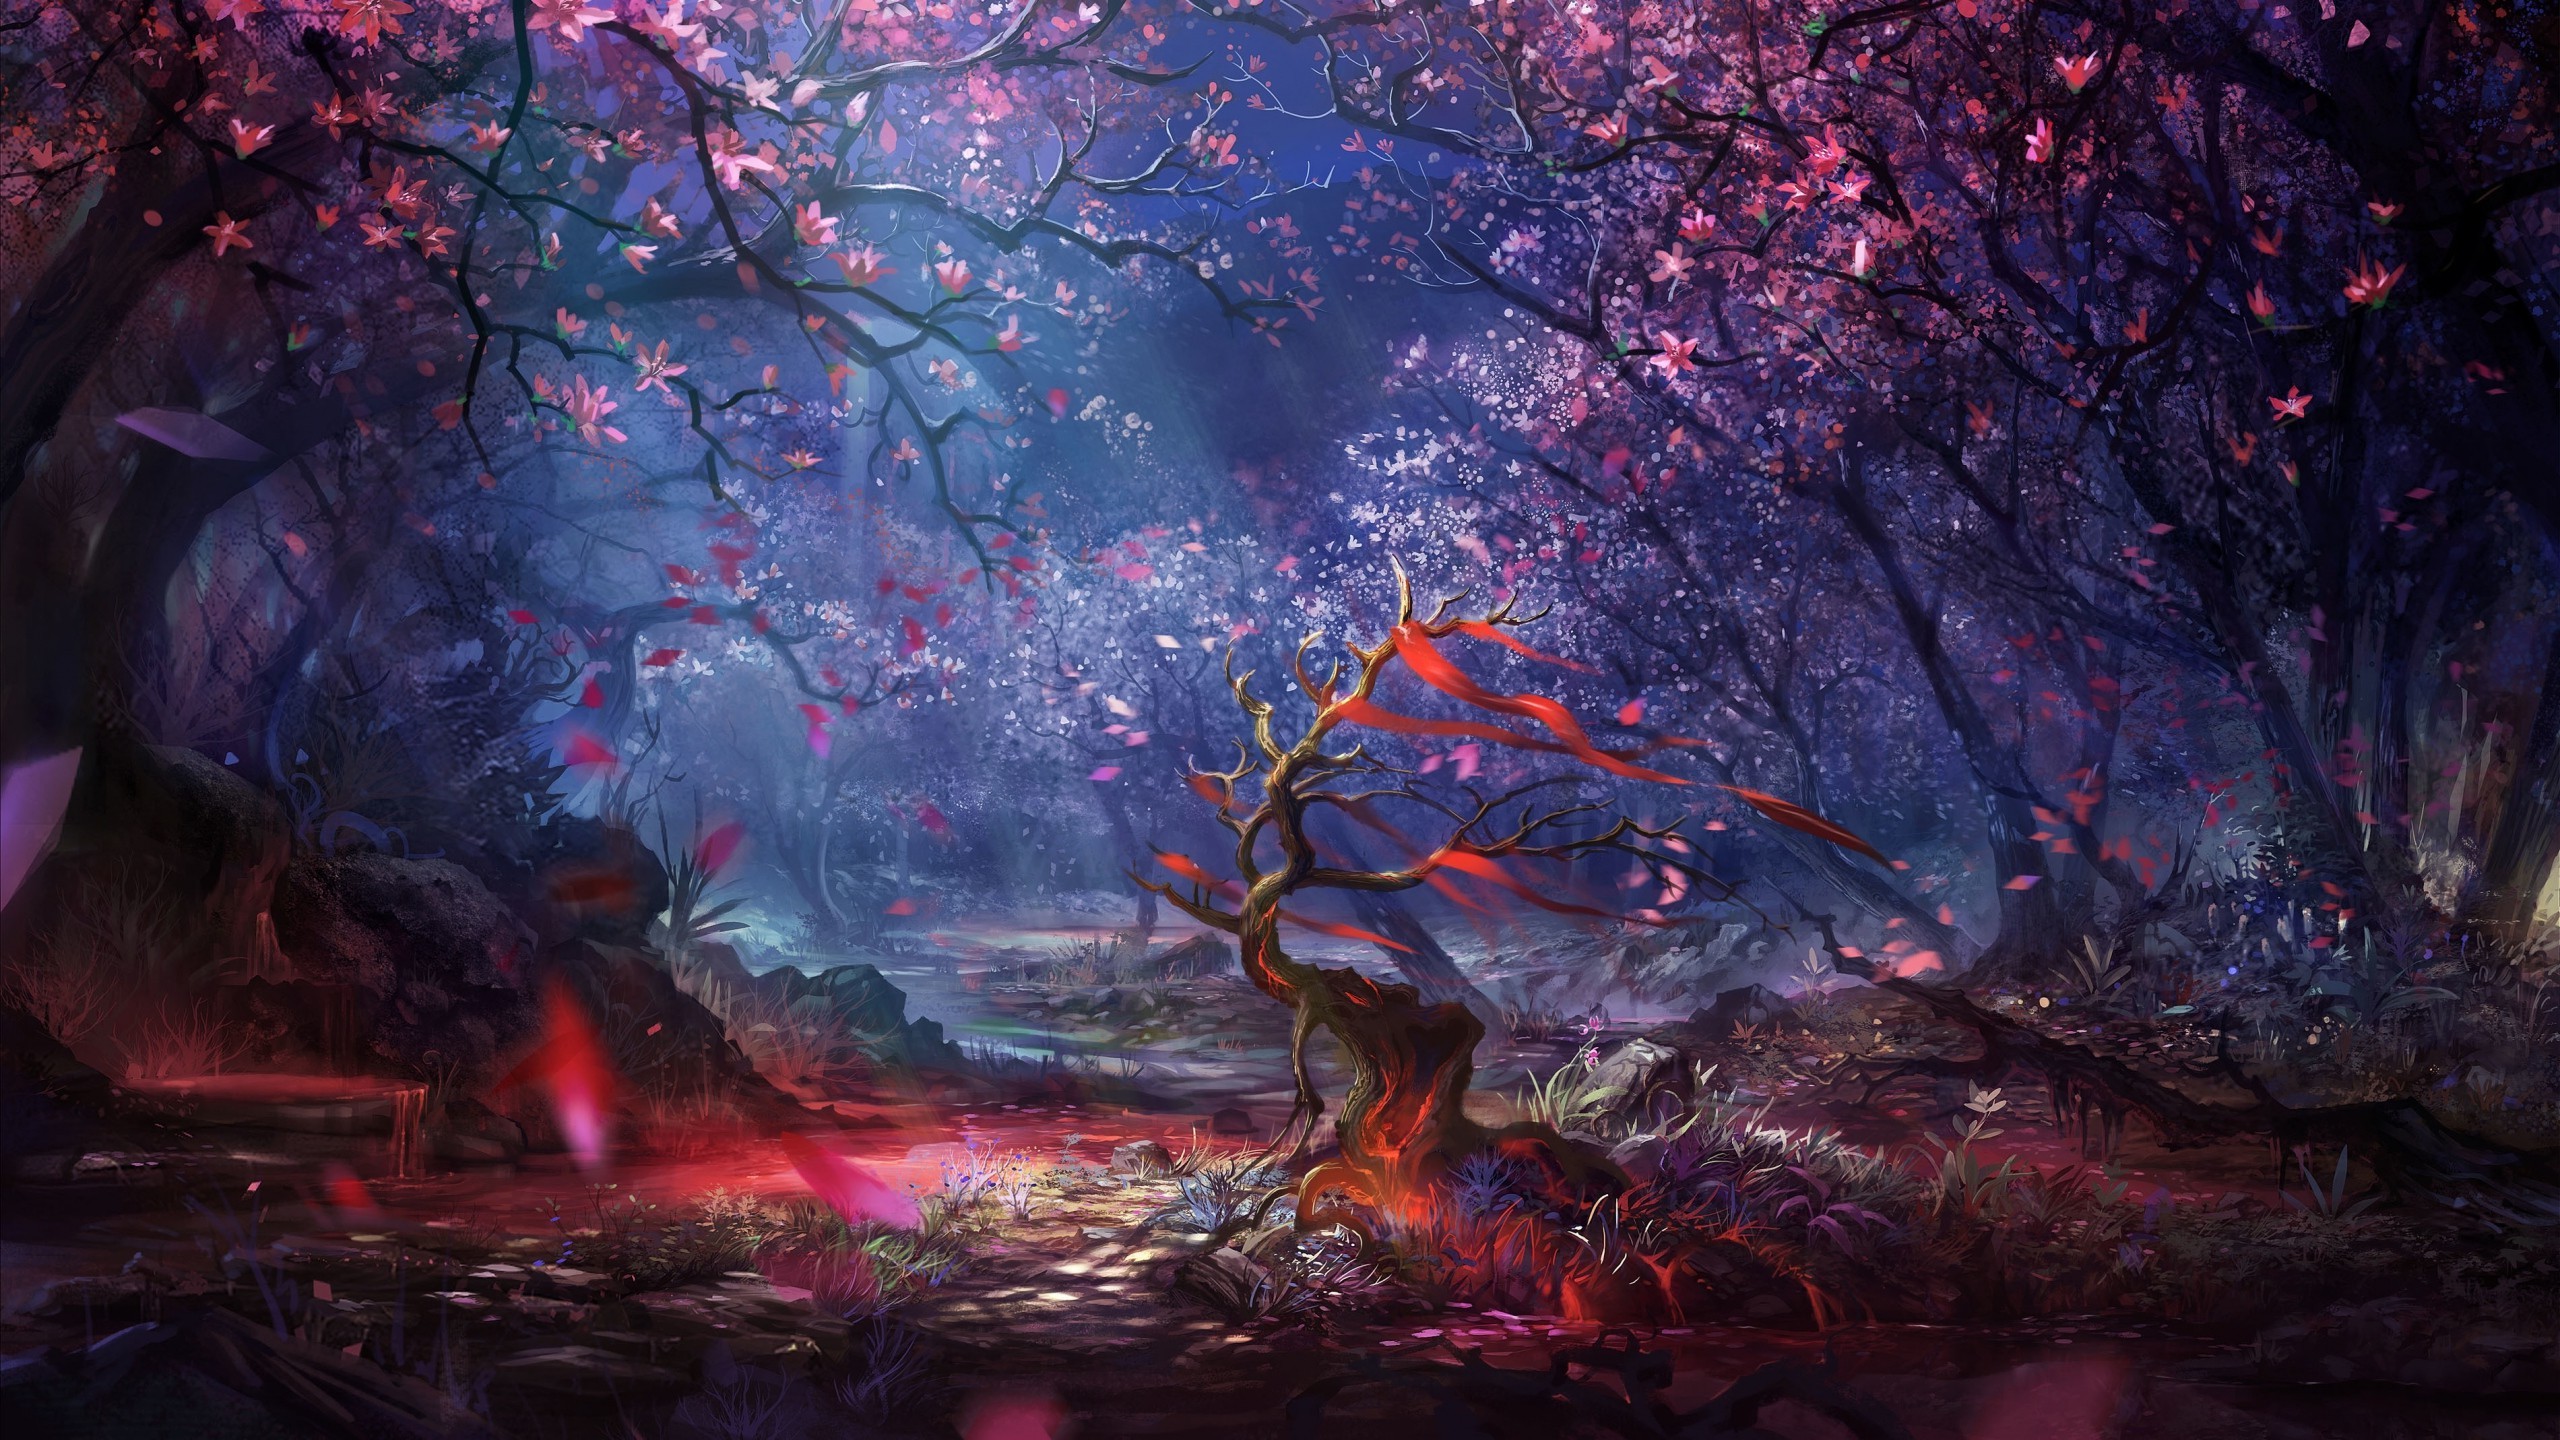 artwork, Fantasy art, Digital art, Forest, Trees, Colorful, Landscape